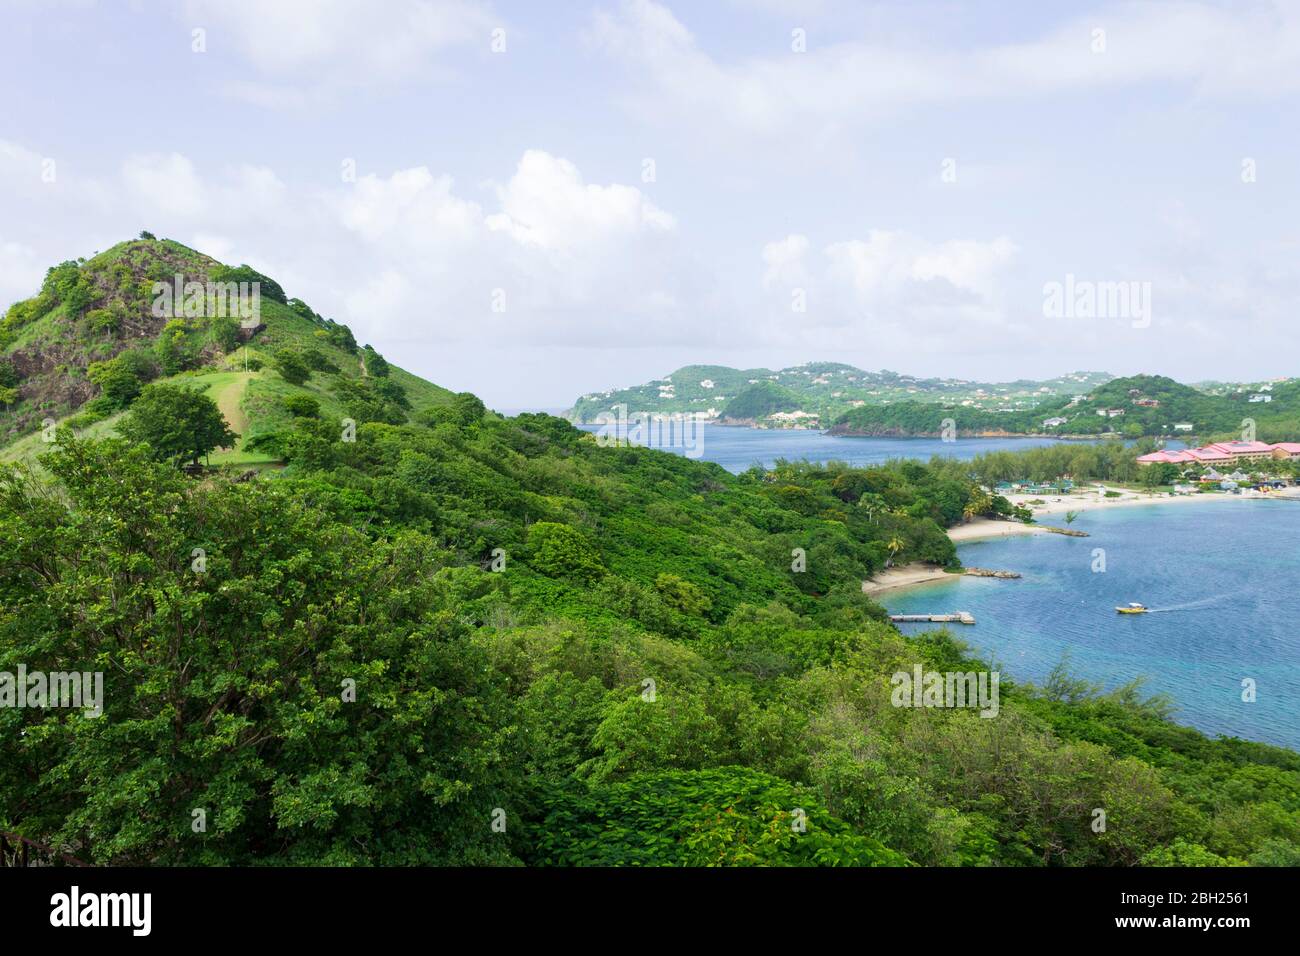 Belle vue panoramique sur le paysage vert ciel bleu clair et mer bleue dans la tropicale Sainte-Lucie Banque D'Images